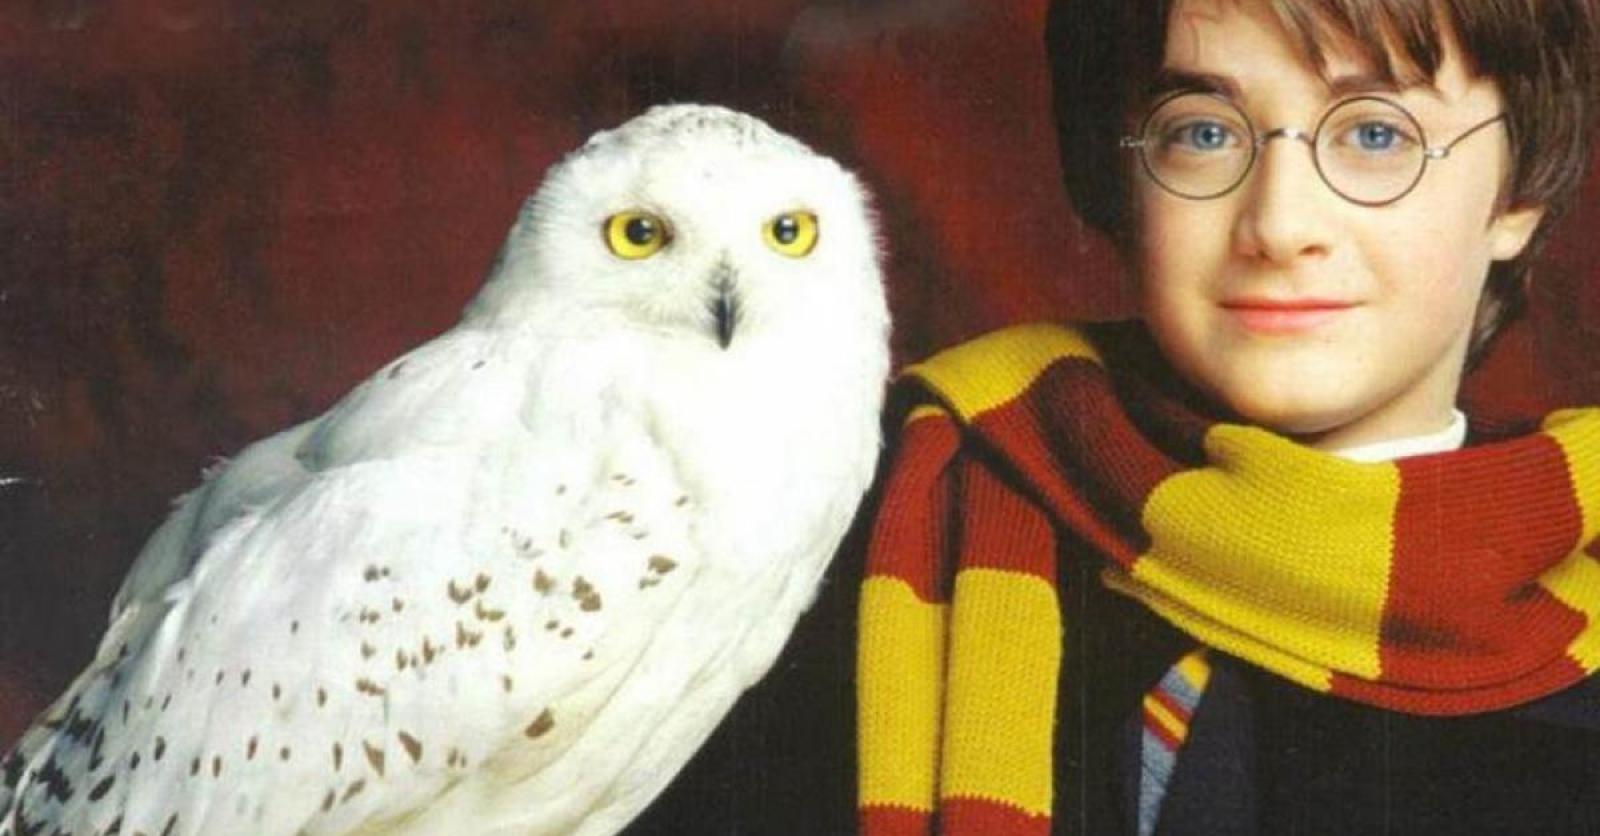 Les chouettes et les hiboux sont menacés à cause du succès d'Harry Potter